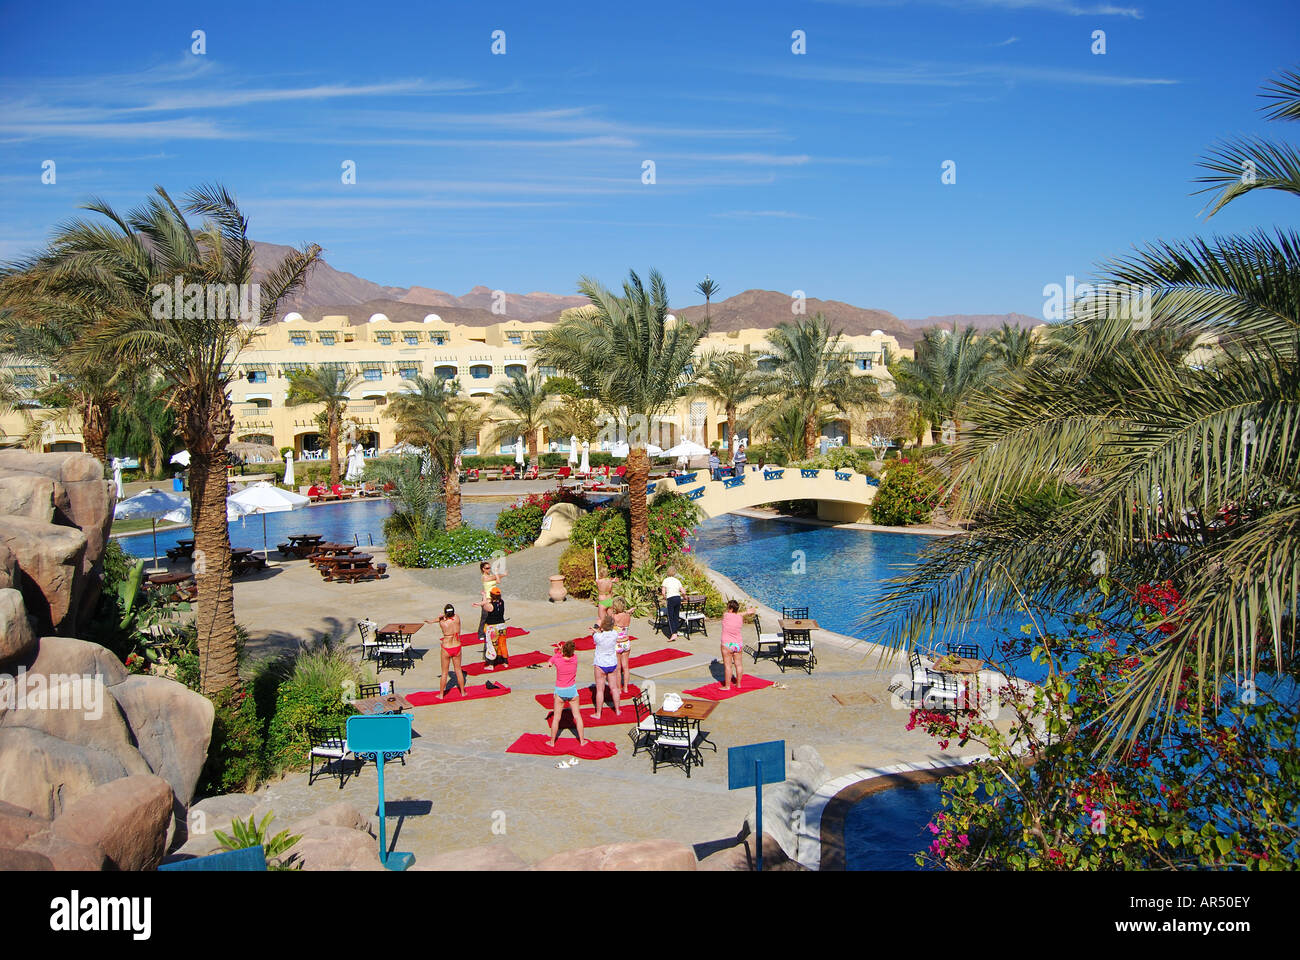 La piscina e la terrazza solarium, Marriott Beach Resort Hotel, Taba Heights, Penisola del Sinai, Repubblica di Egitto Foto Stock